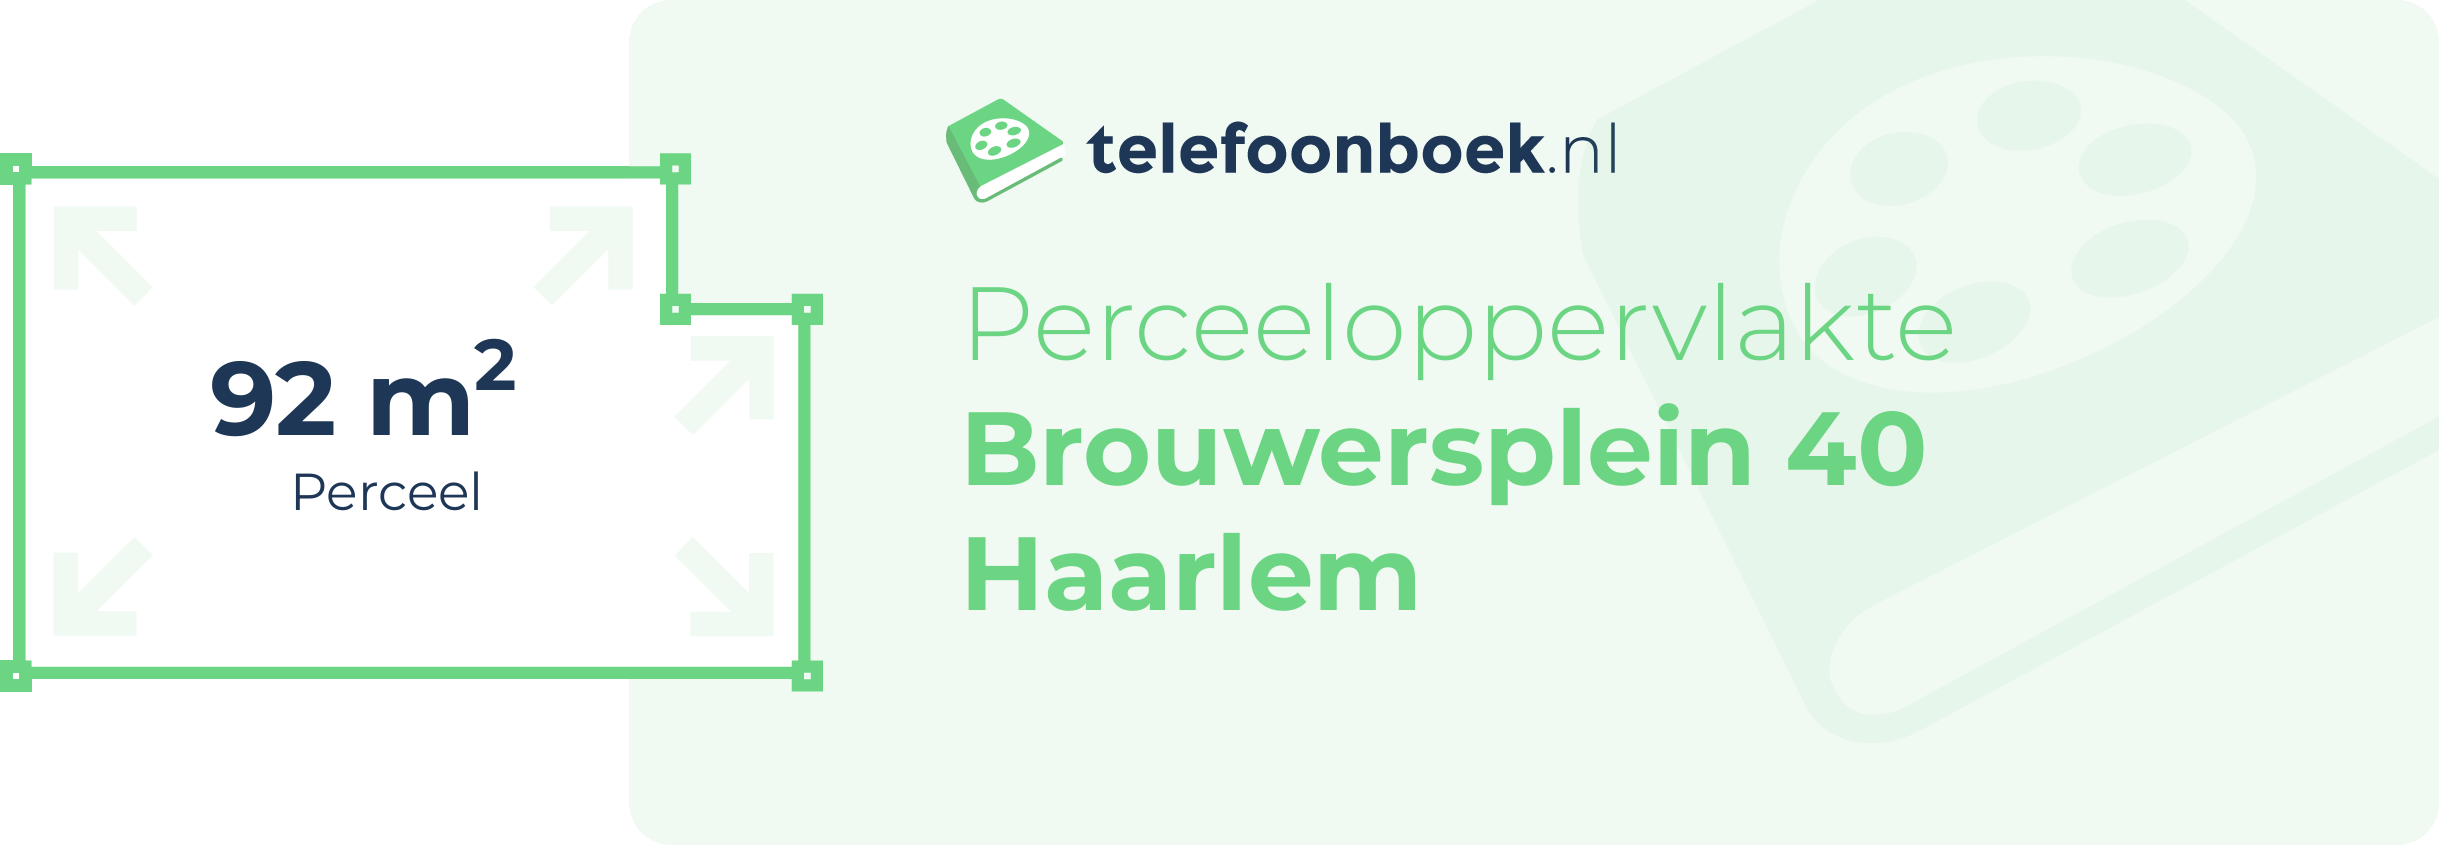 Perceeloppervlakte Brouwersplein 40 Haarlem